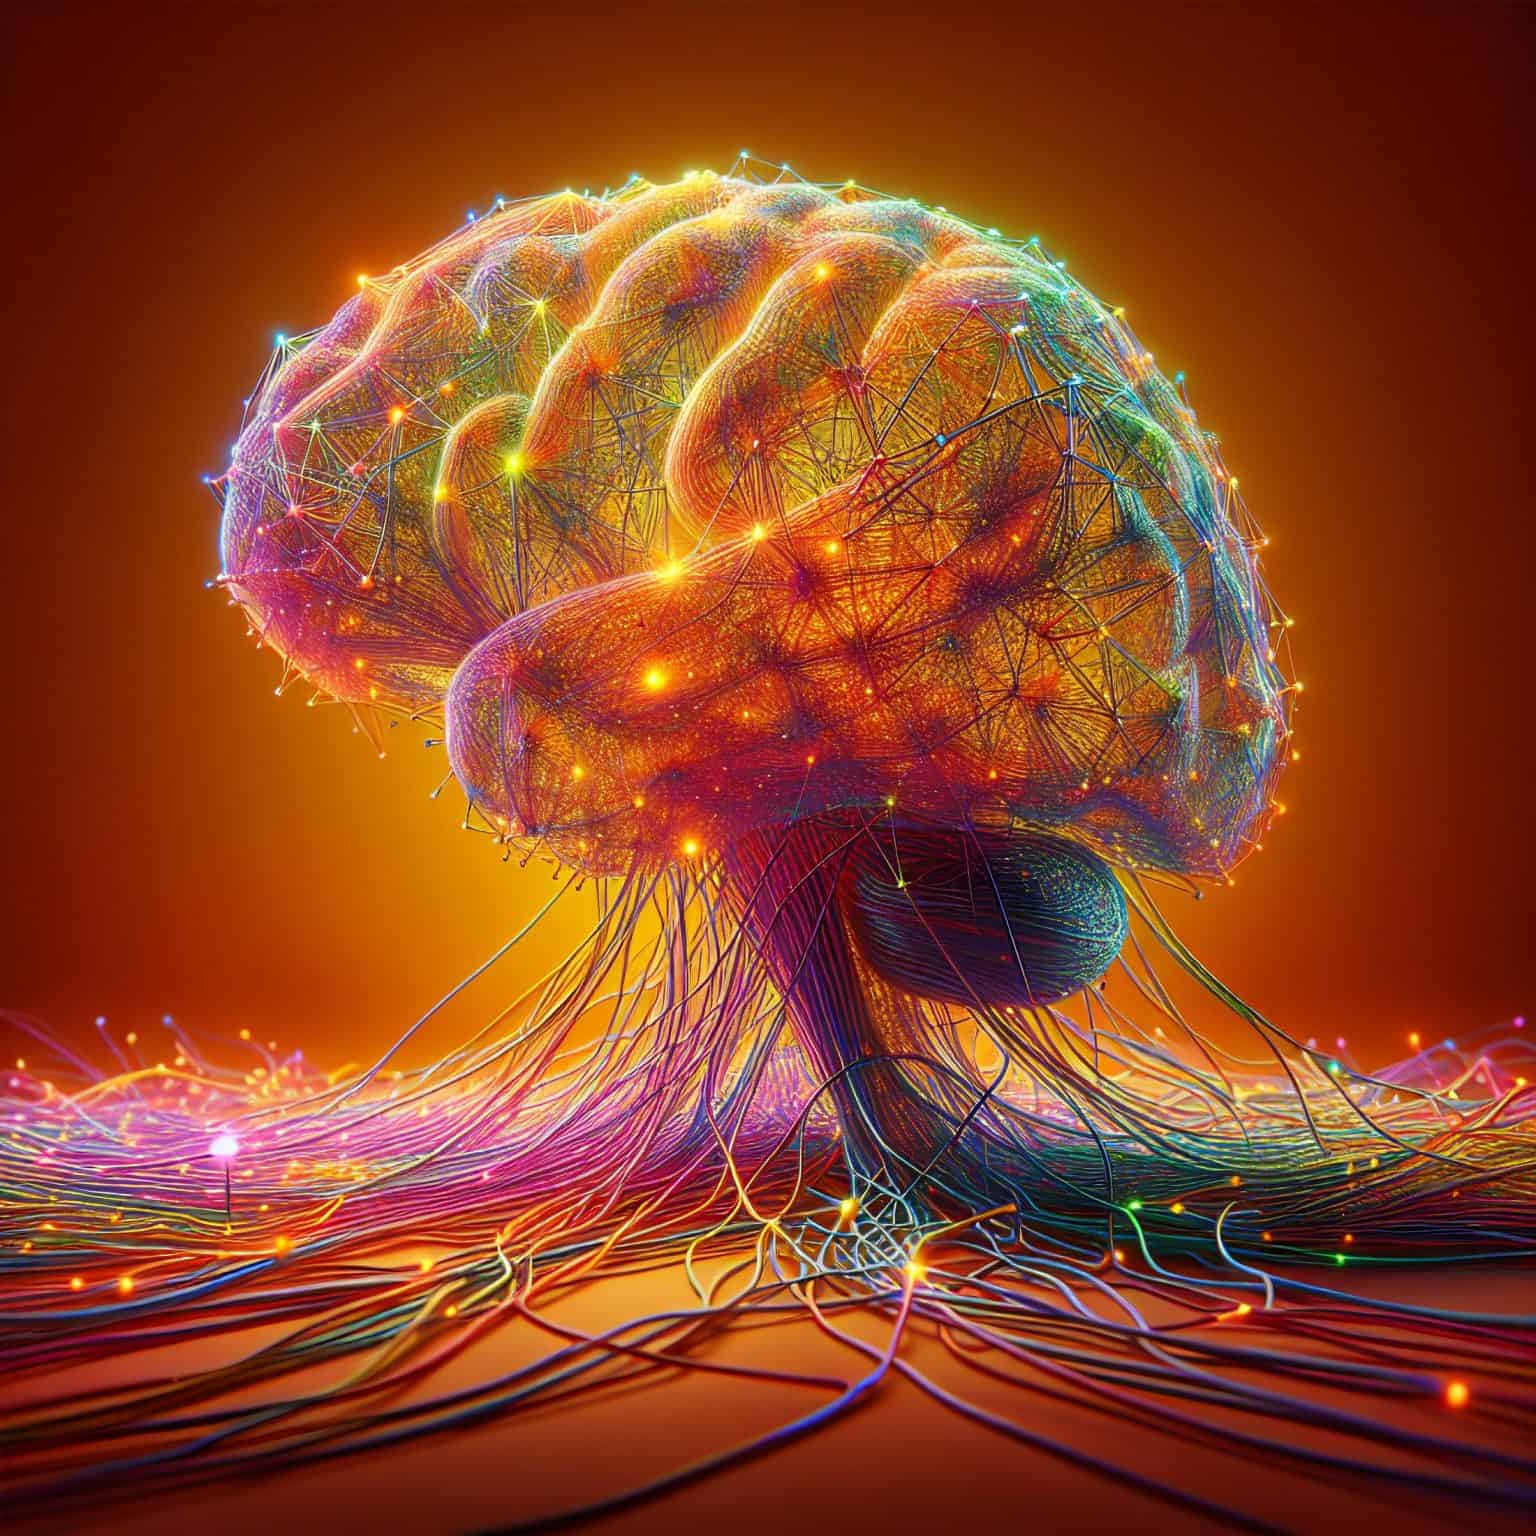 Startup cria biocomputador com 16 “minicérebros” e um detalhe revolucionário